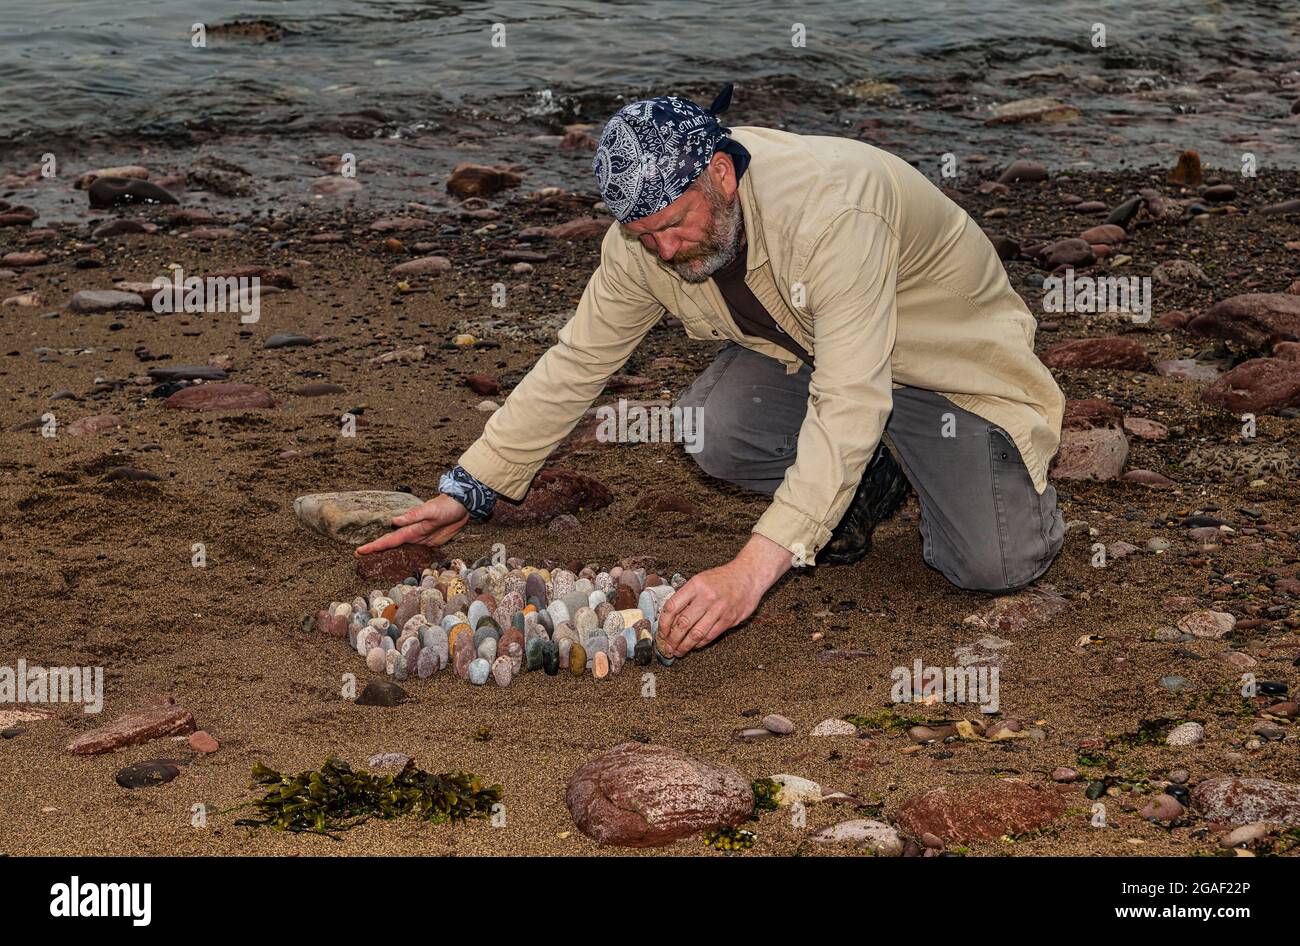 Der Landkünstler James Brunt kreiert am Strand, Dunbar, East Lothian, Schottland, Großbritannien, eine Stein- oder Felsskulptur Stockfoto